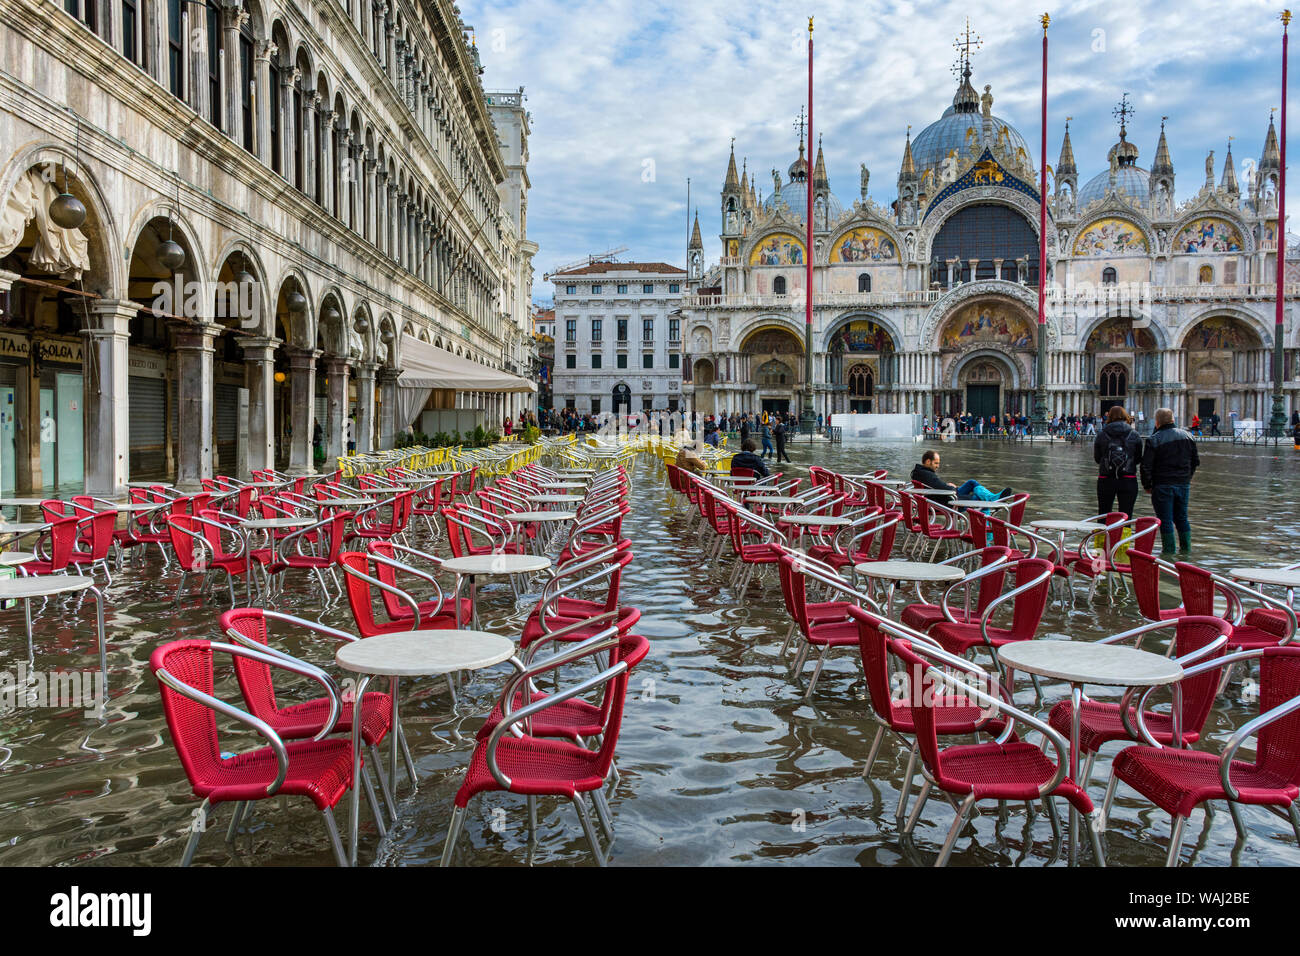 Des tables et des chaises à la Procuratie Vecchie et la basilique San Marco, au cours d'une acqua alta (haute mer) cas, la Place Saint Marc, Venise, Italie Banque D'Images